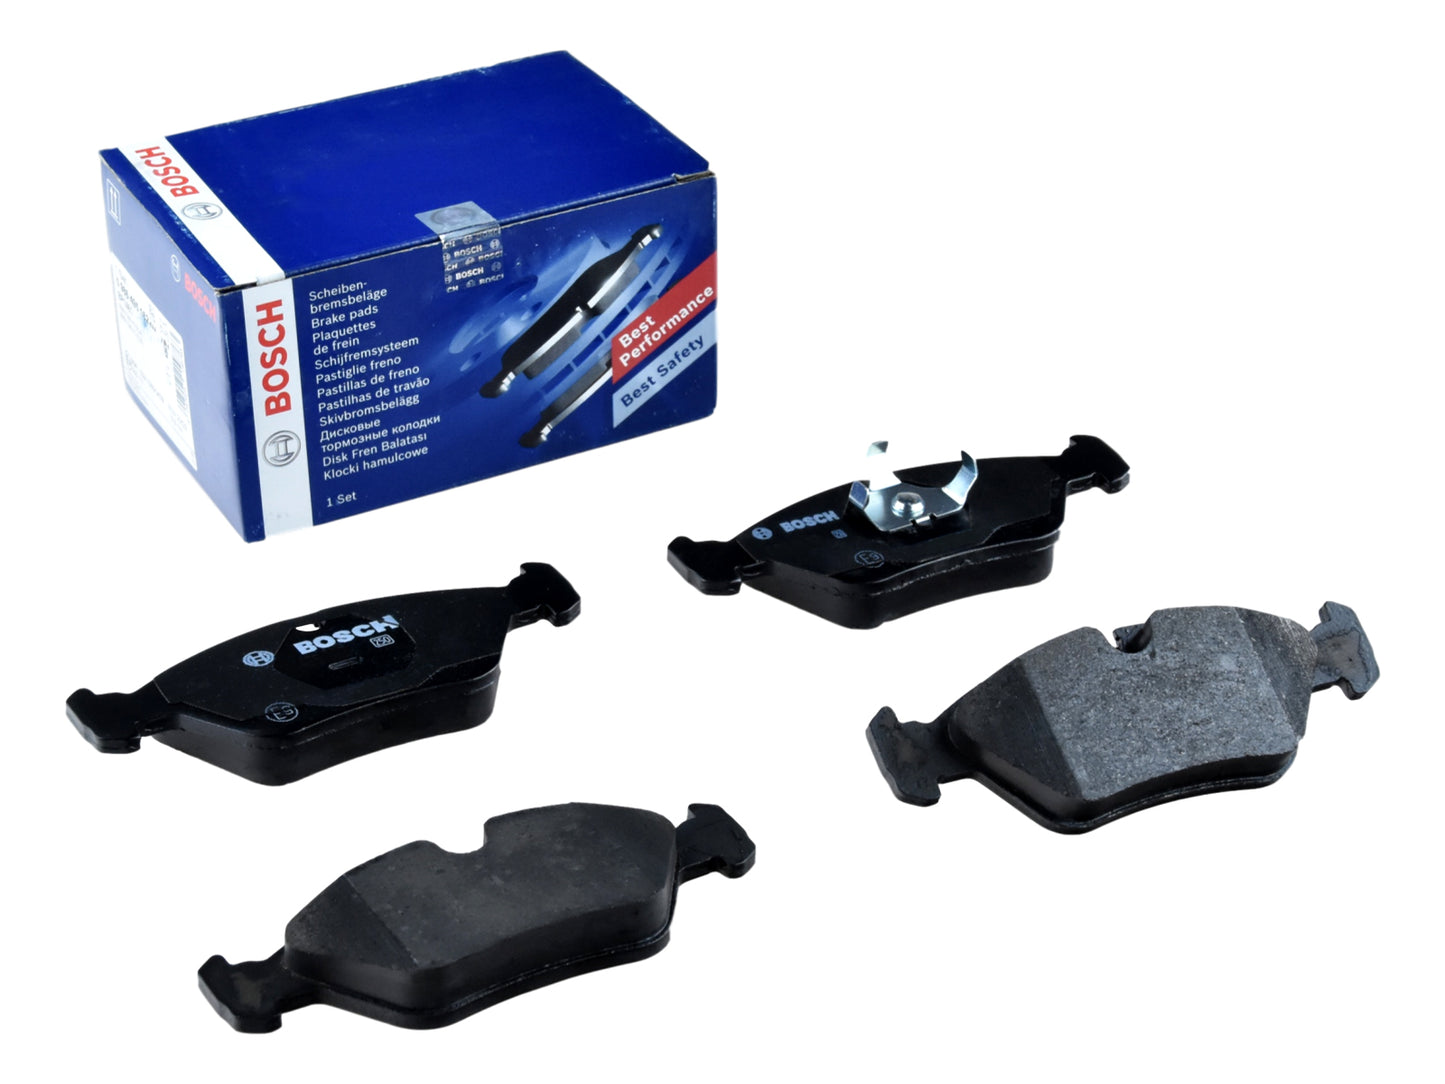 Brake pads for Porsche 928 4.7 S -'82 BOSCH FRONT  92835193101